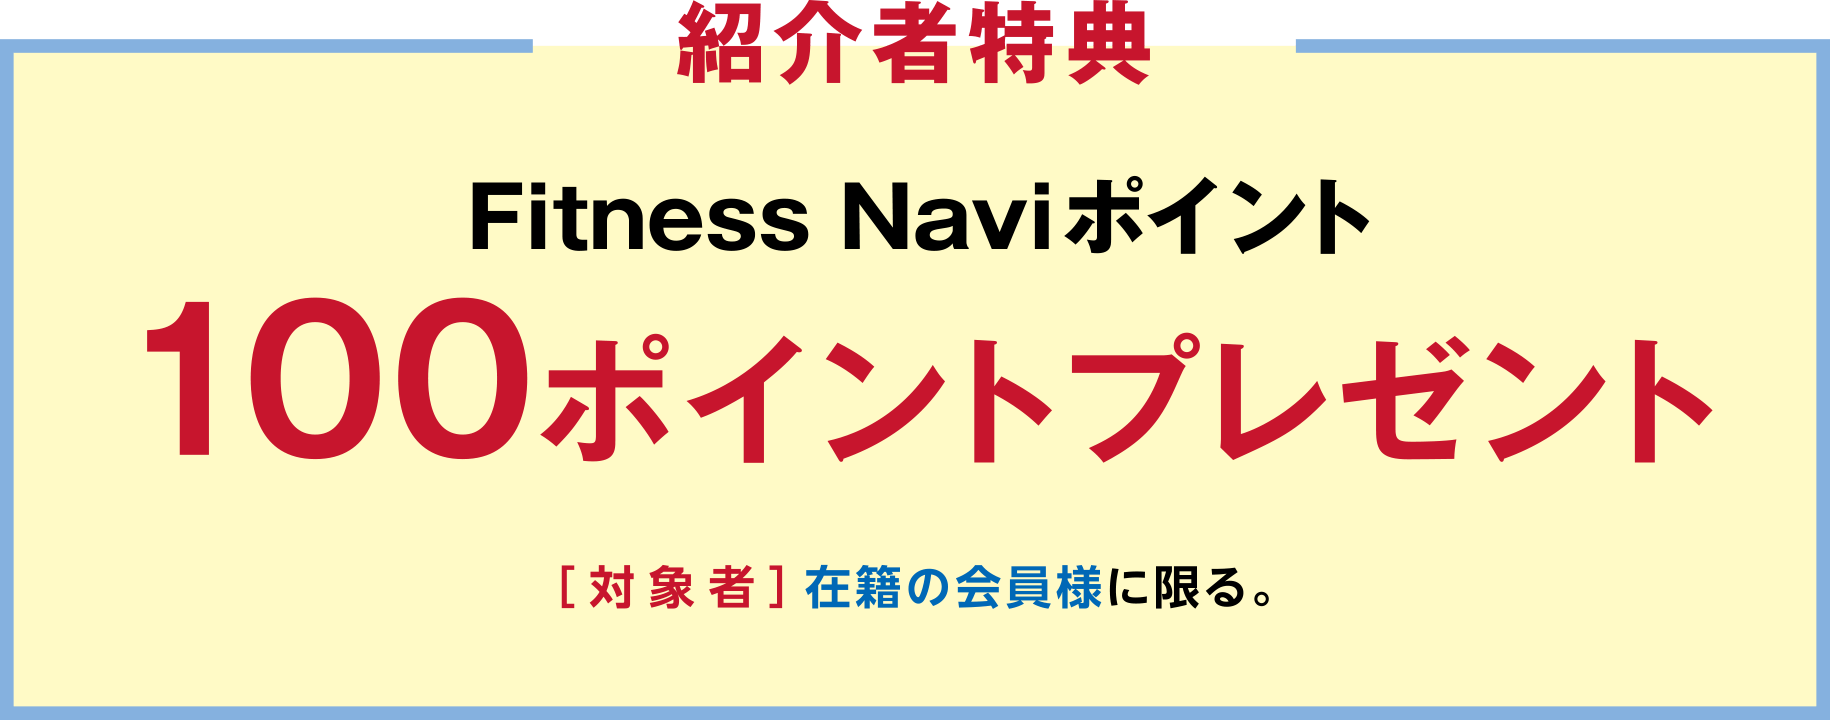 「紹介者特典」Fitness Naviポイント100ポイントプレゼント ［対象者］在籍の会員様に限る。